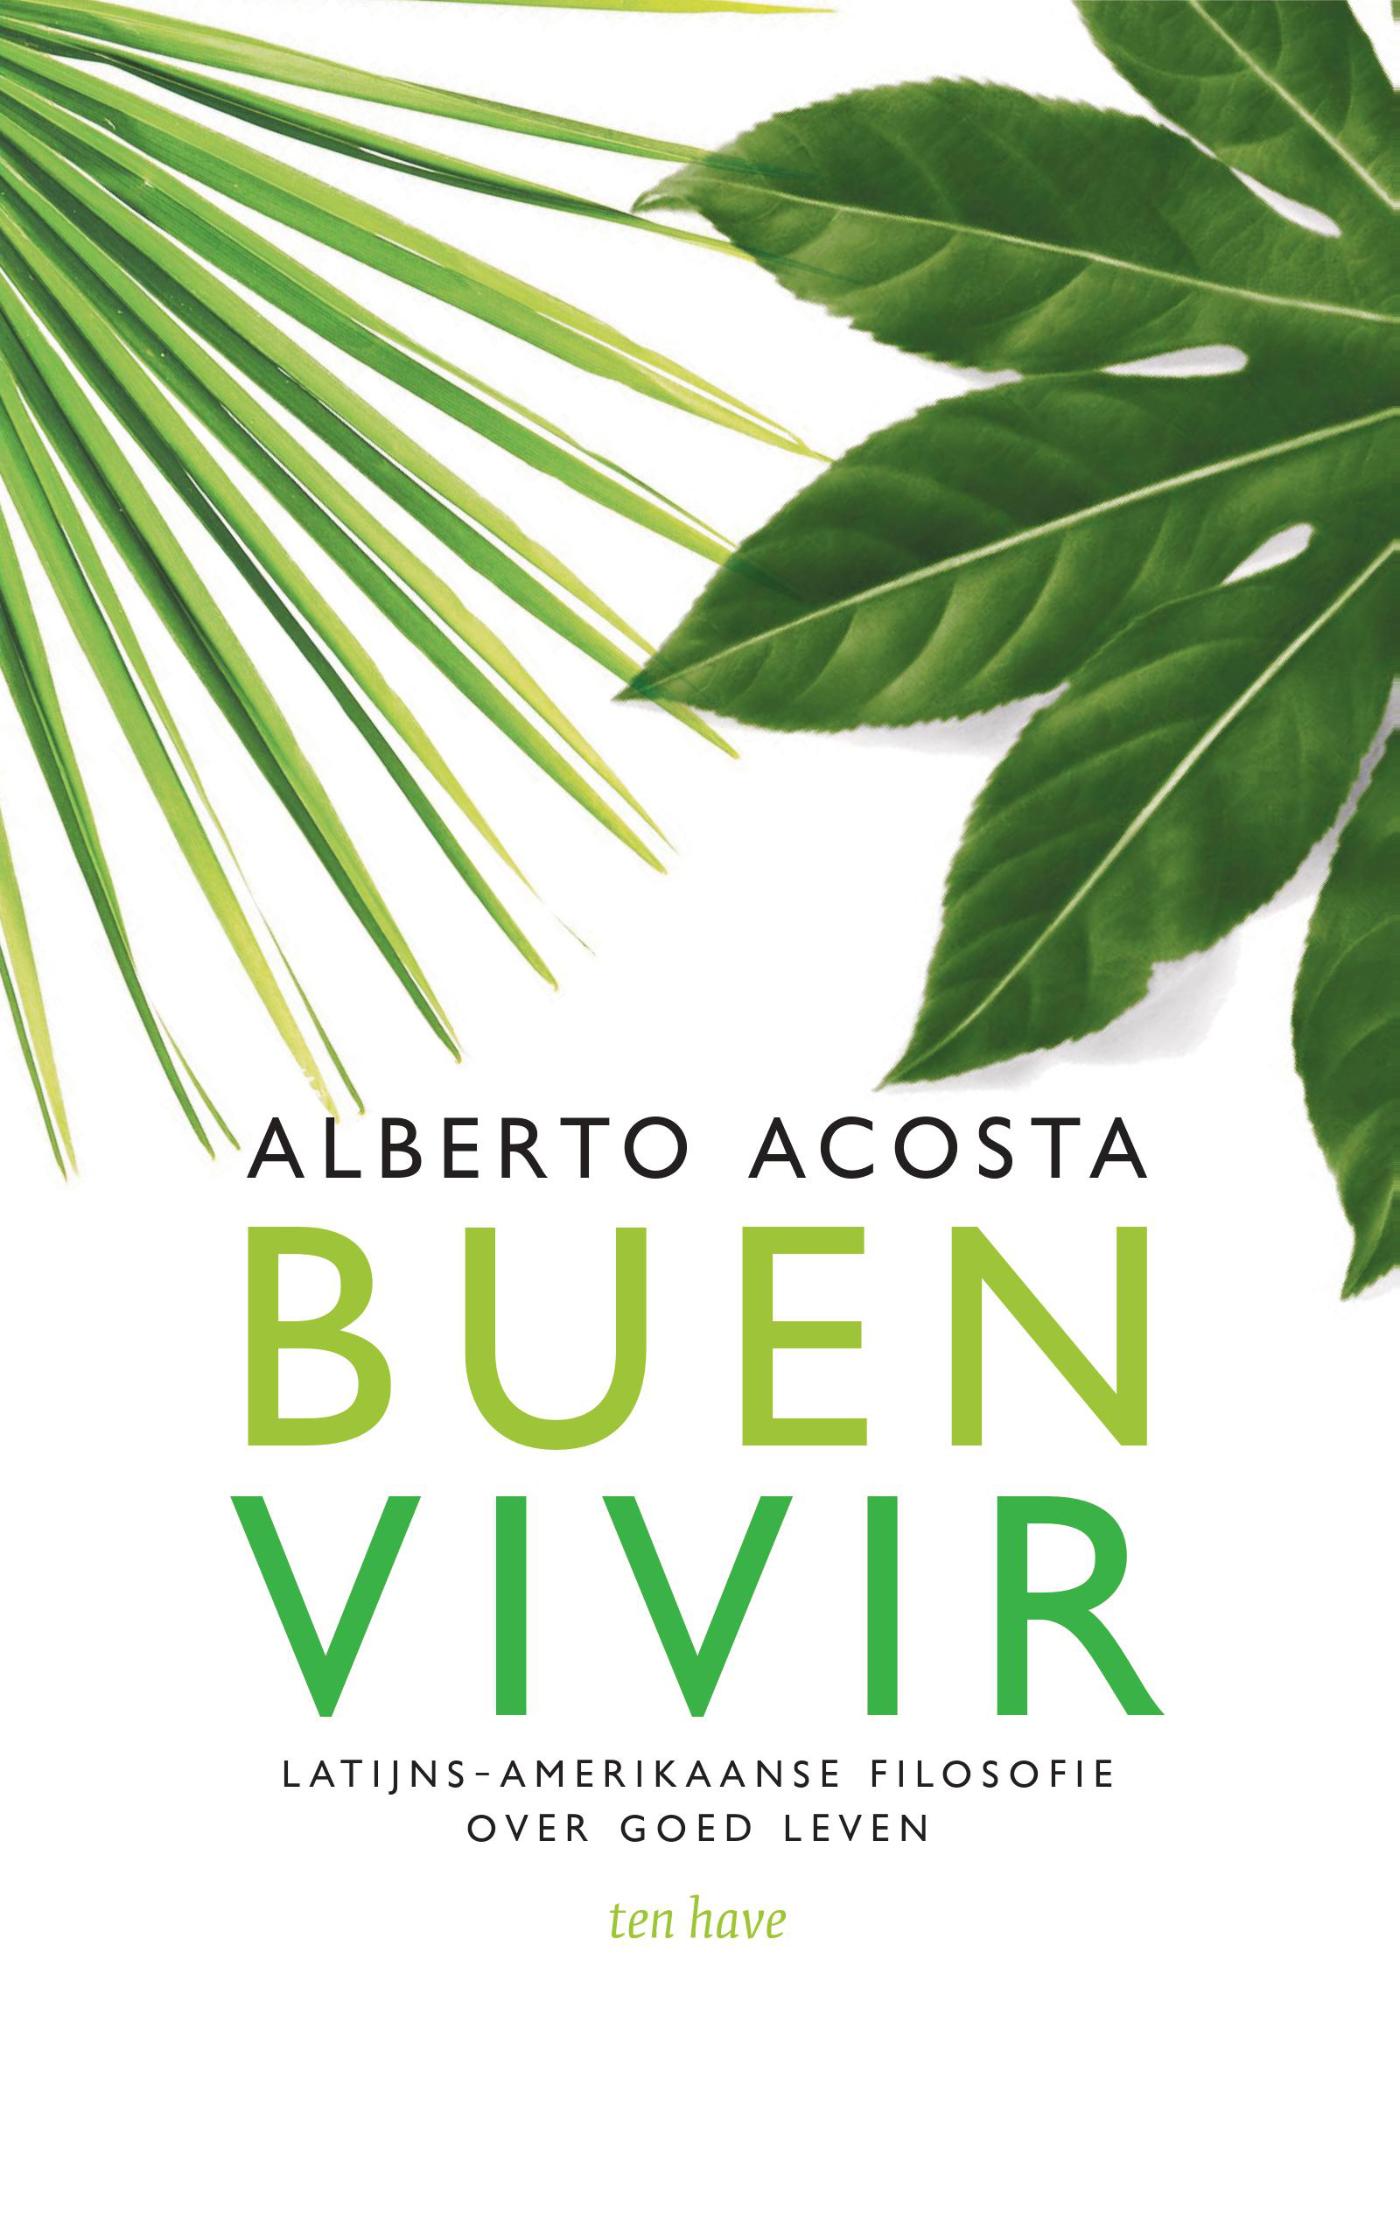 Alberto Acosta - Buen vivir